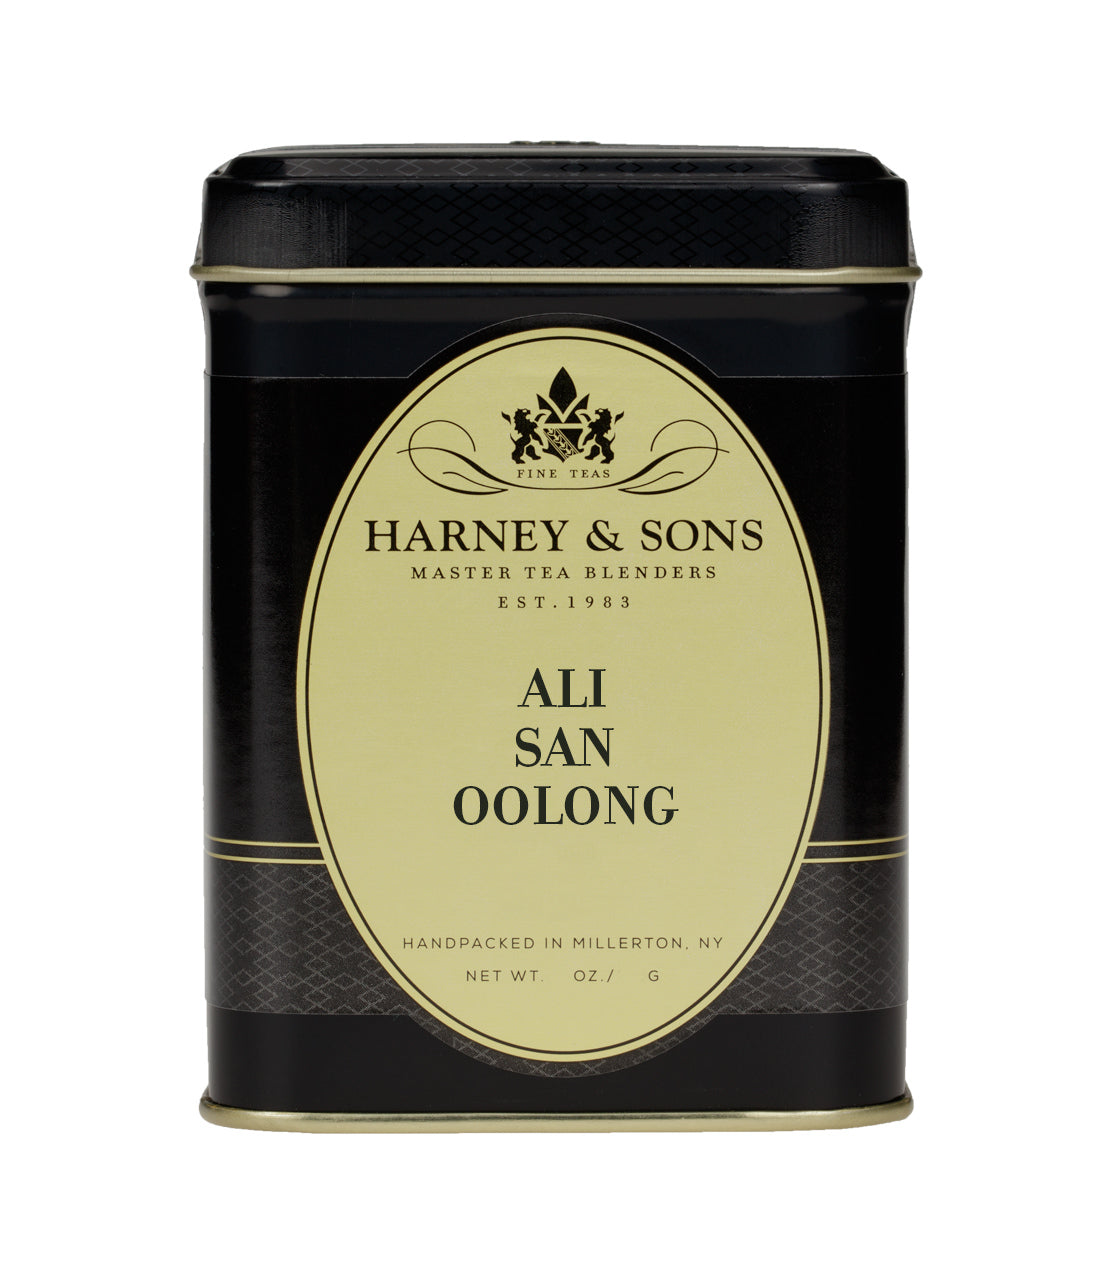 Ali San Oolong - Loose 2 oz. Tin - Harney & Sons Fine Teas